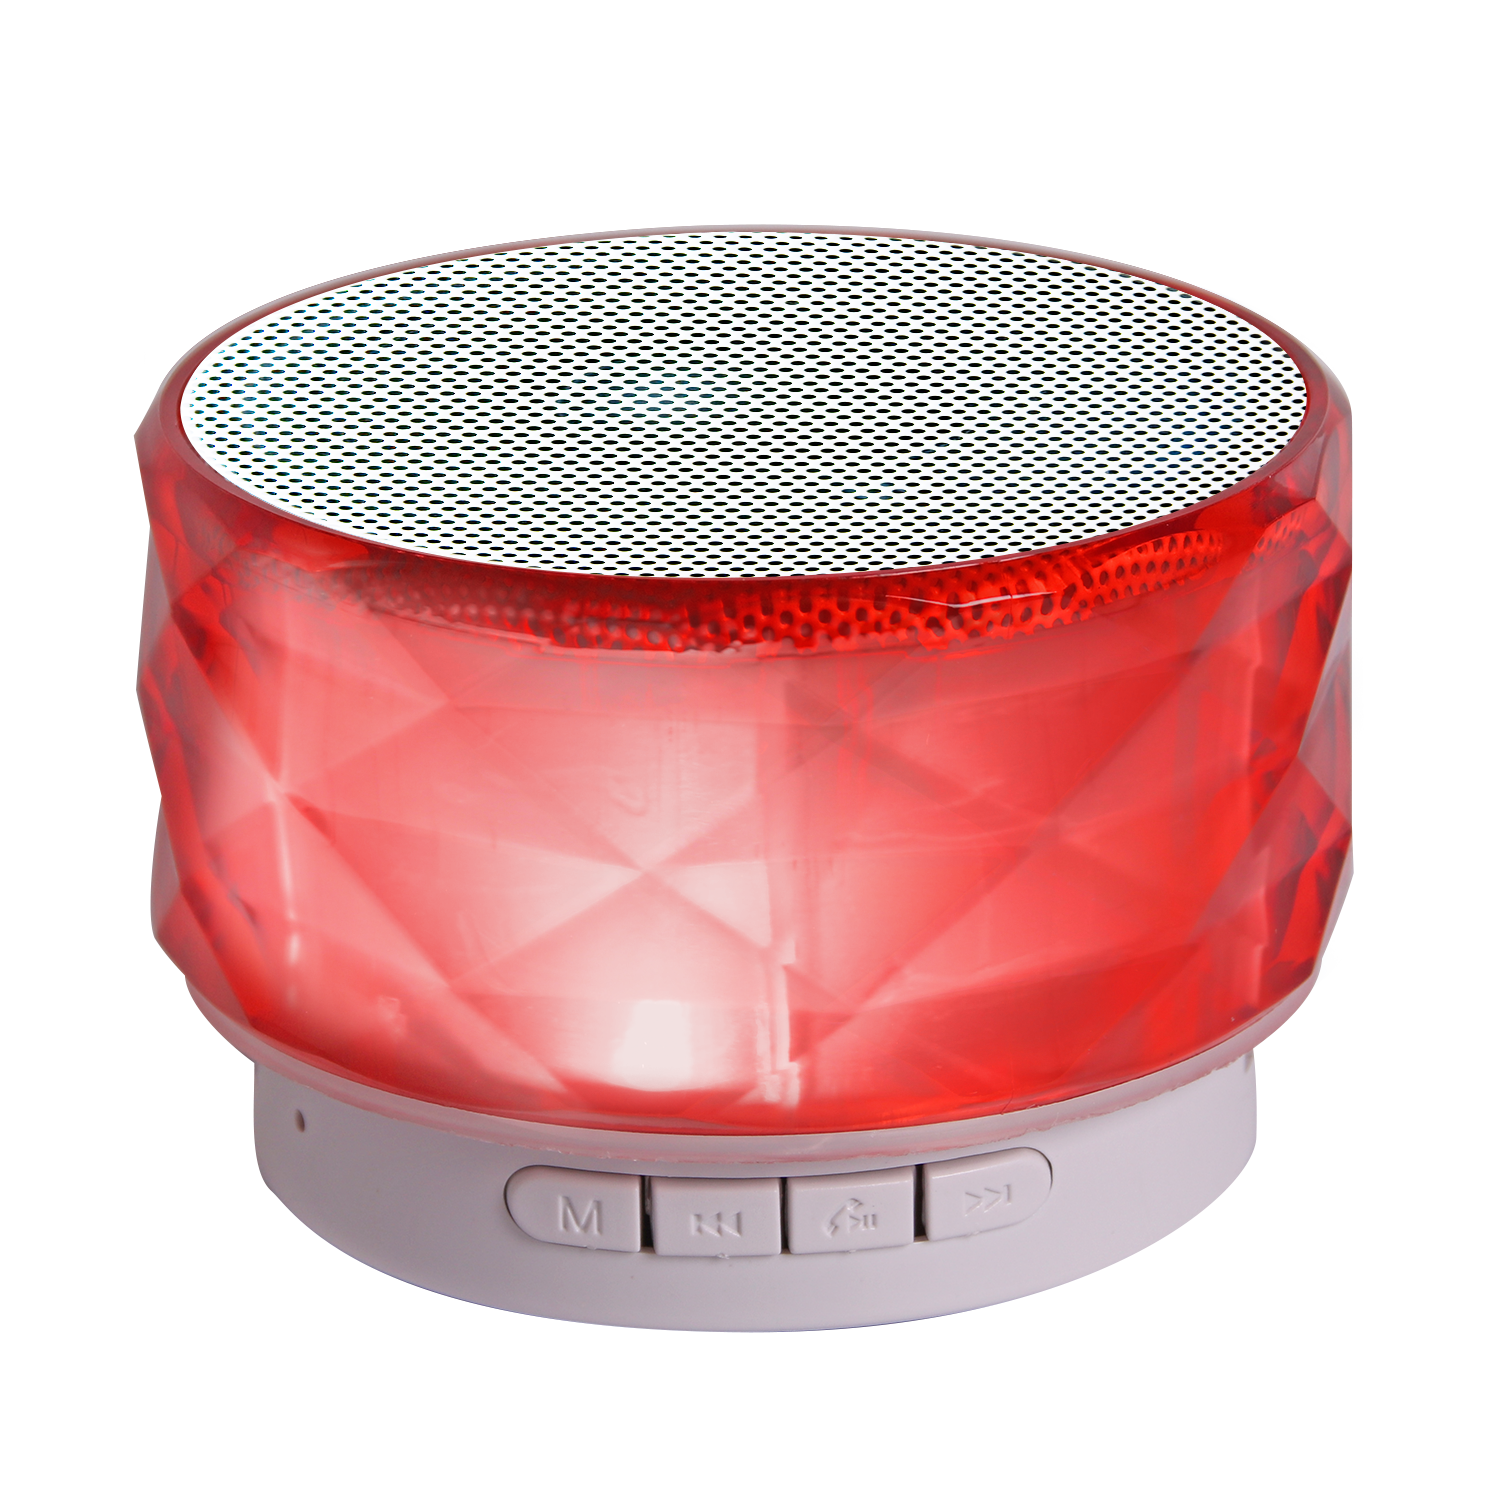 TechXtras Crystal Wireless Speaker - Red